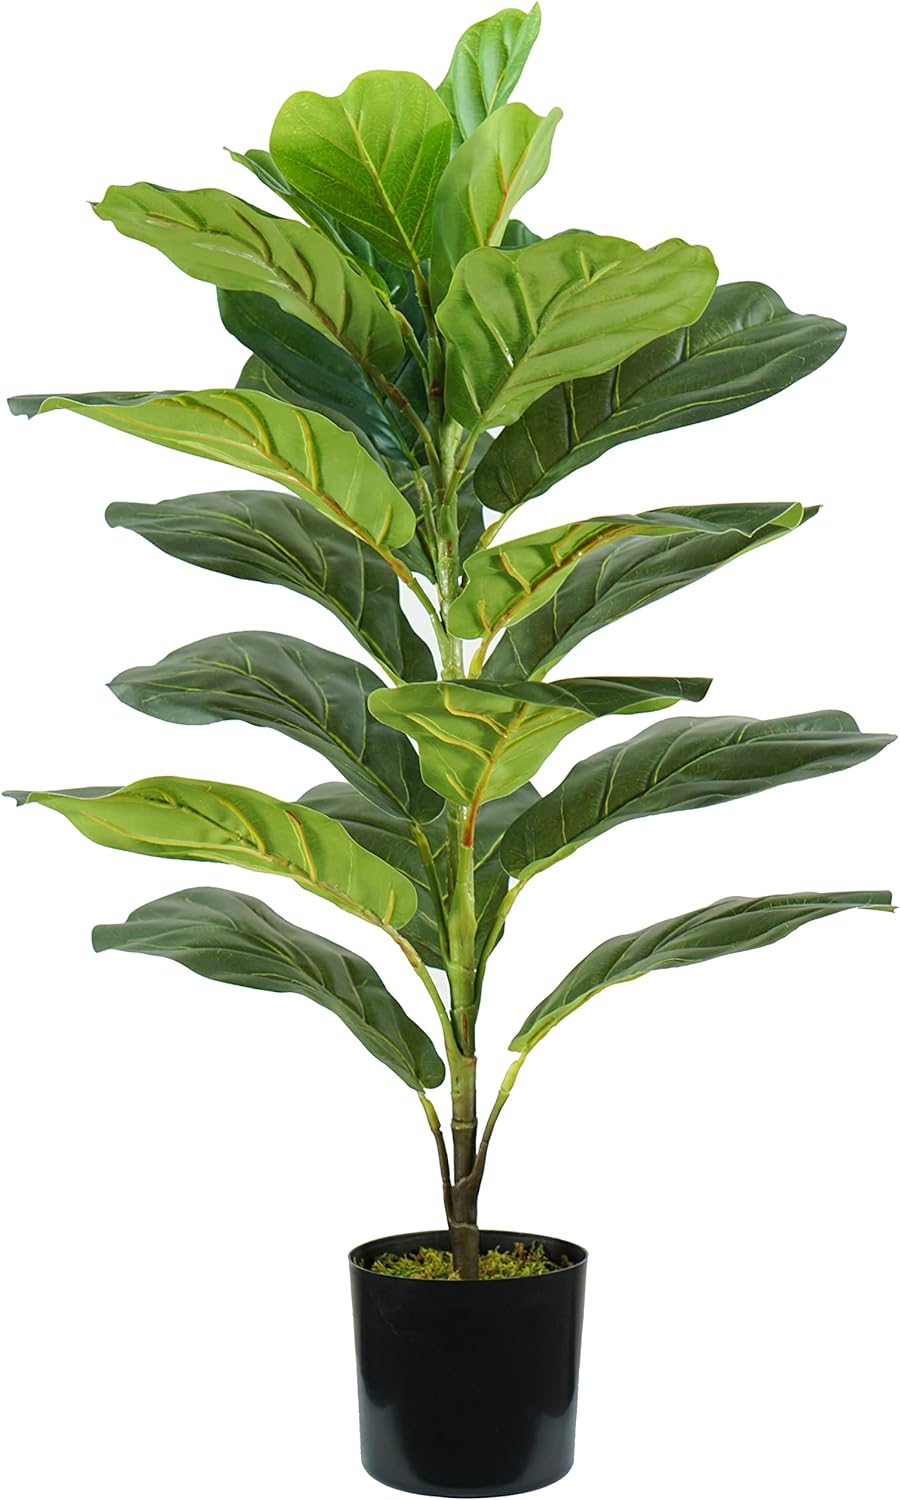 P2150569 - Pianta Ficus Lyrata 21 foglie